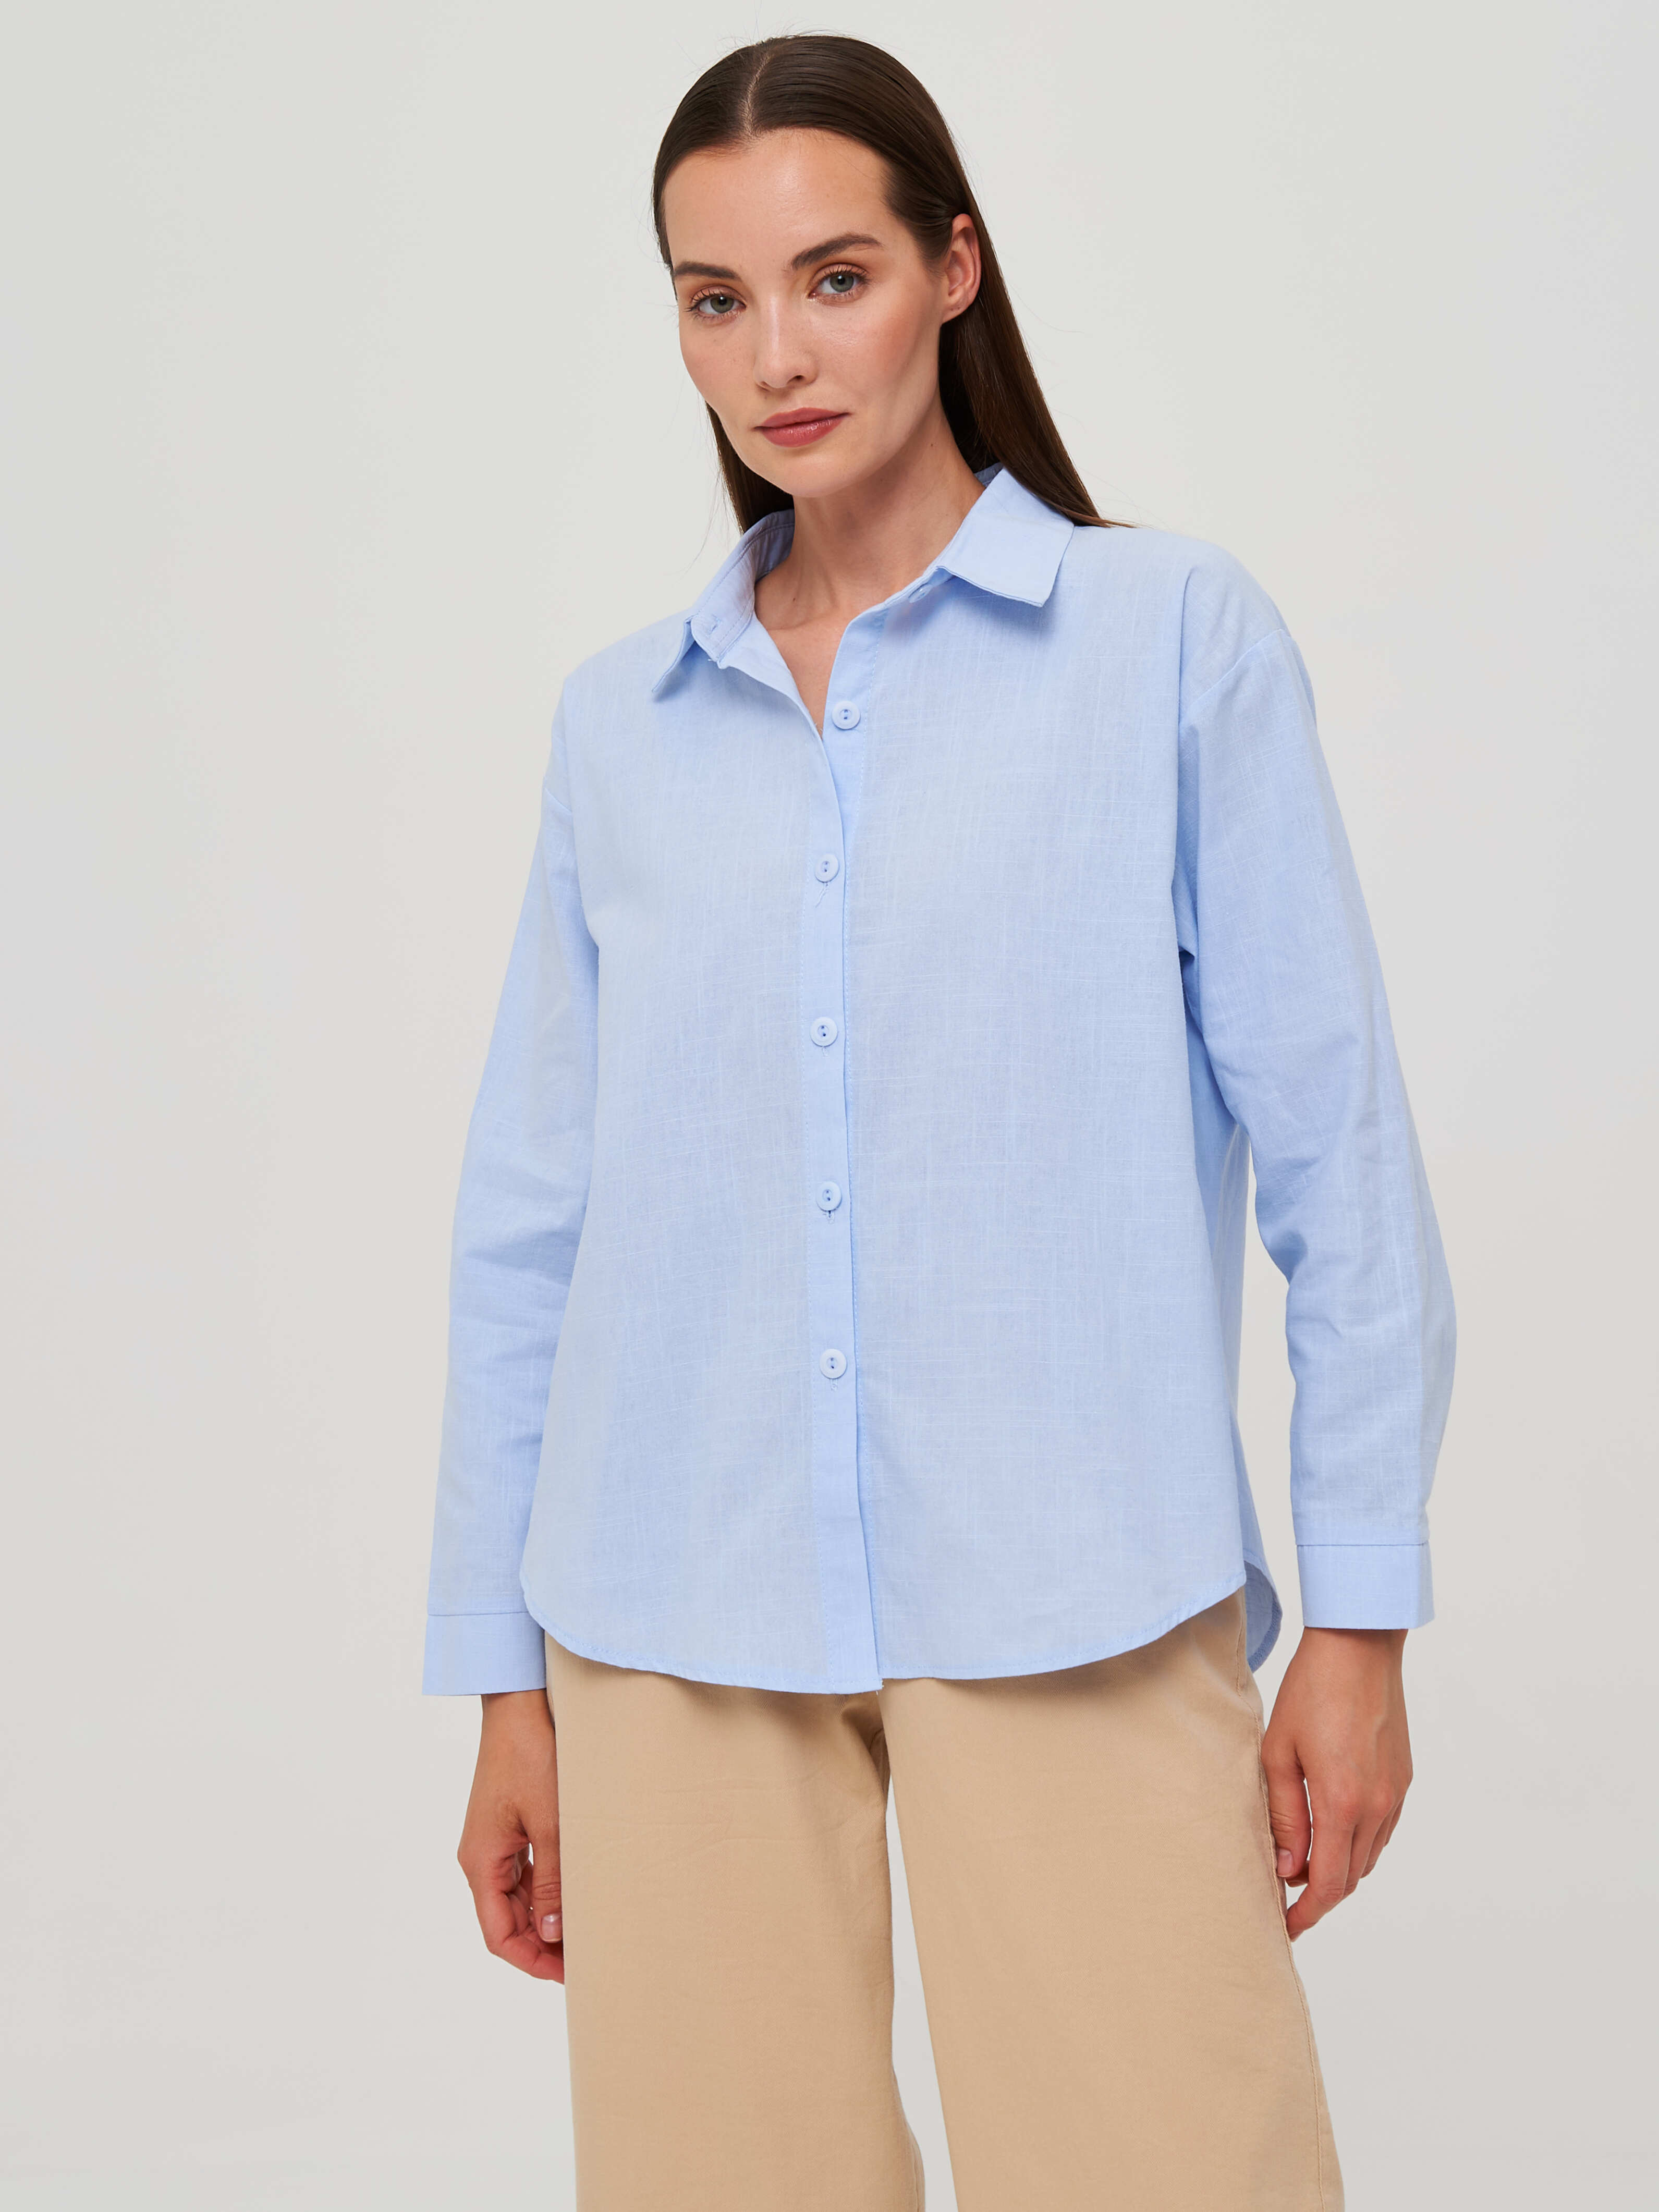 Рубашка женская Каляев 68505 голубая 48 RU